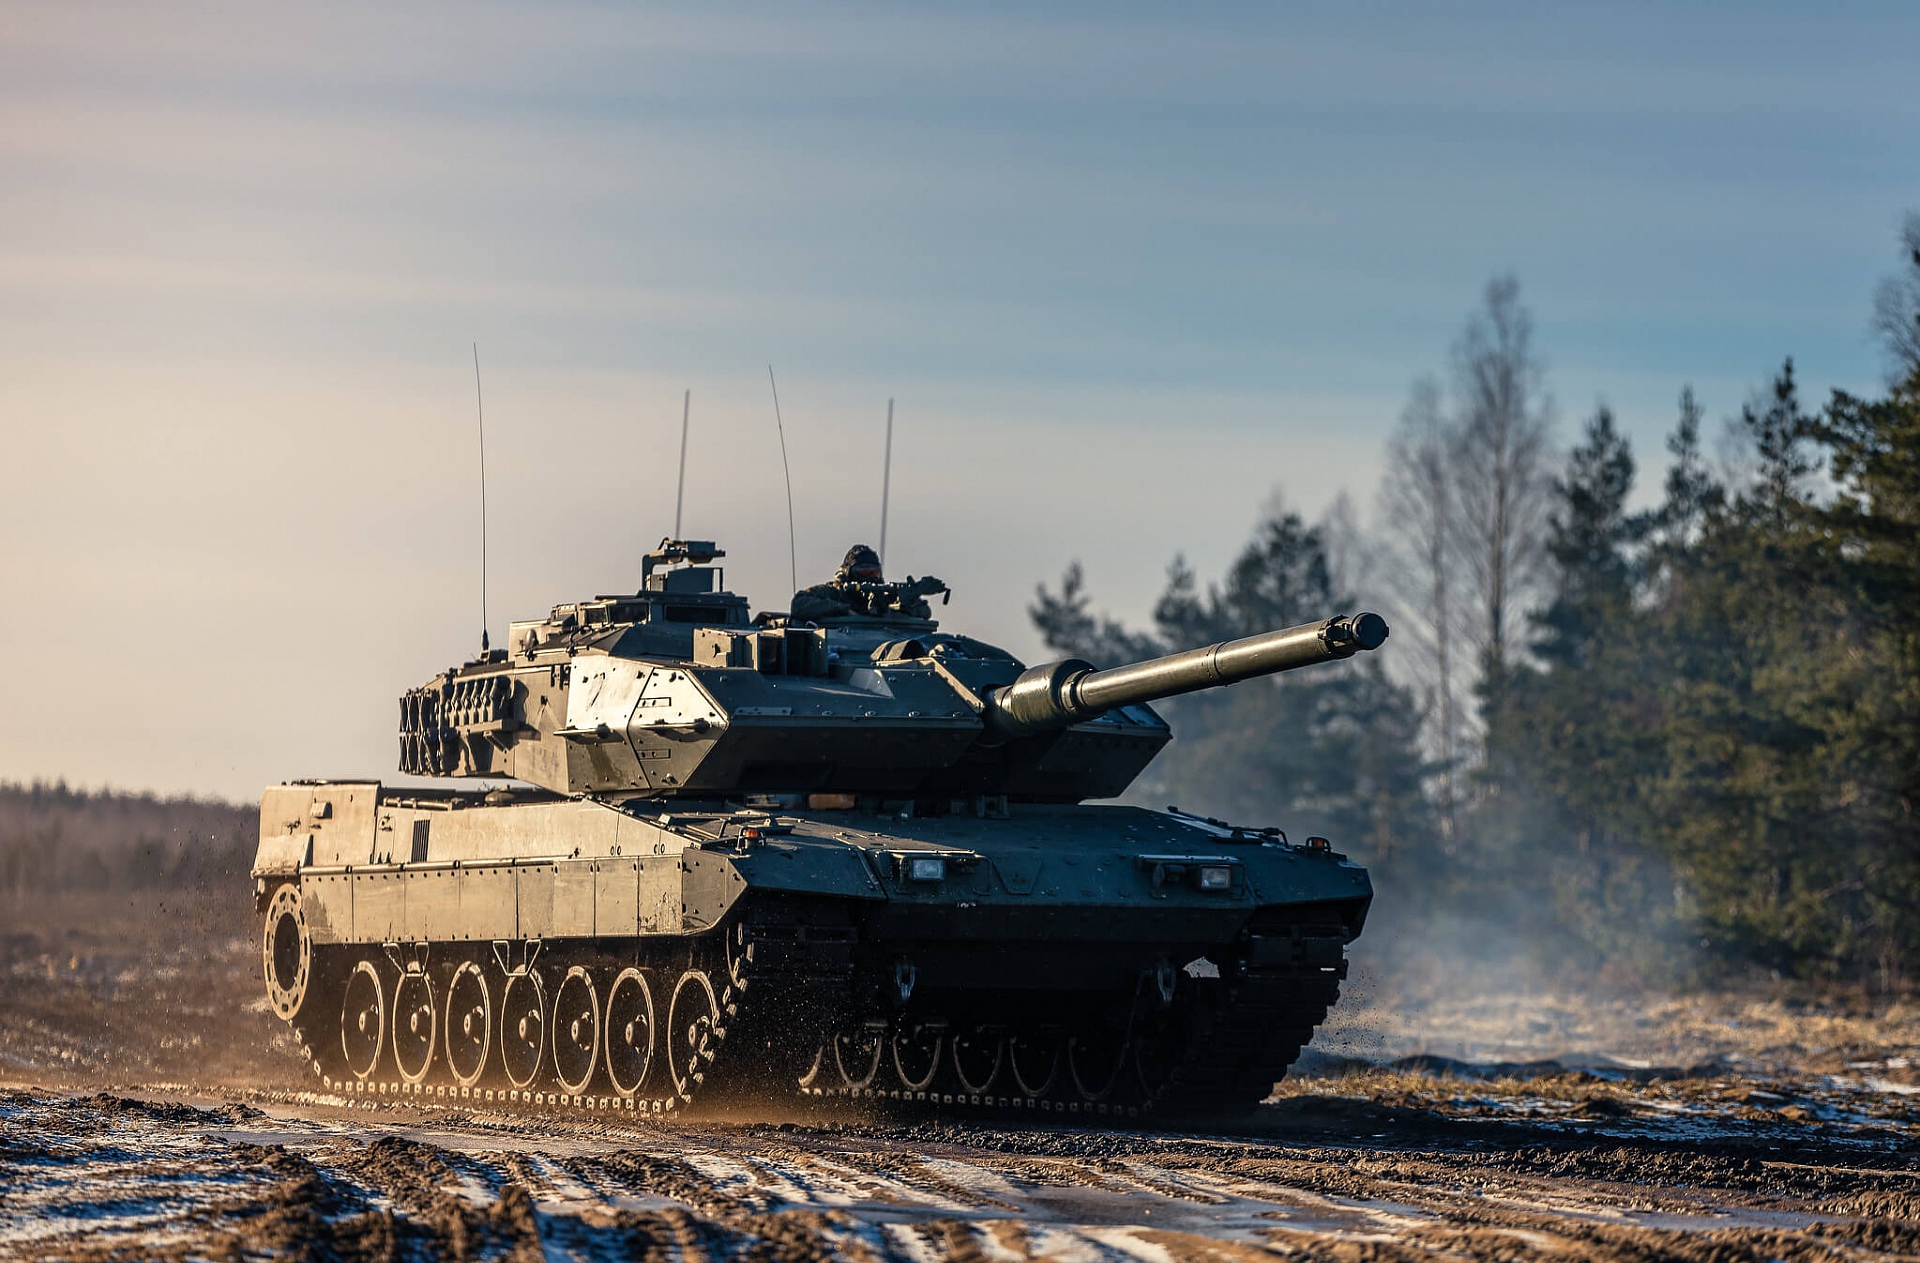 Krustpunktā: Militāro industriju stiprina visā Eiropā: kā ar to sokas Latvijai?